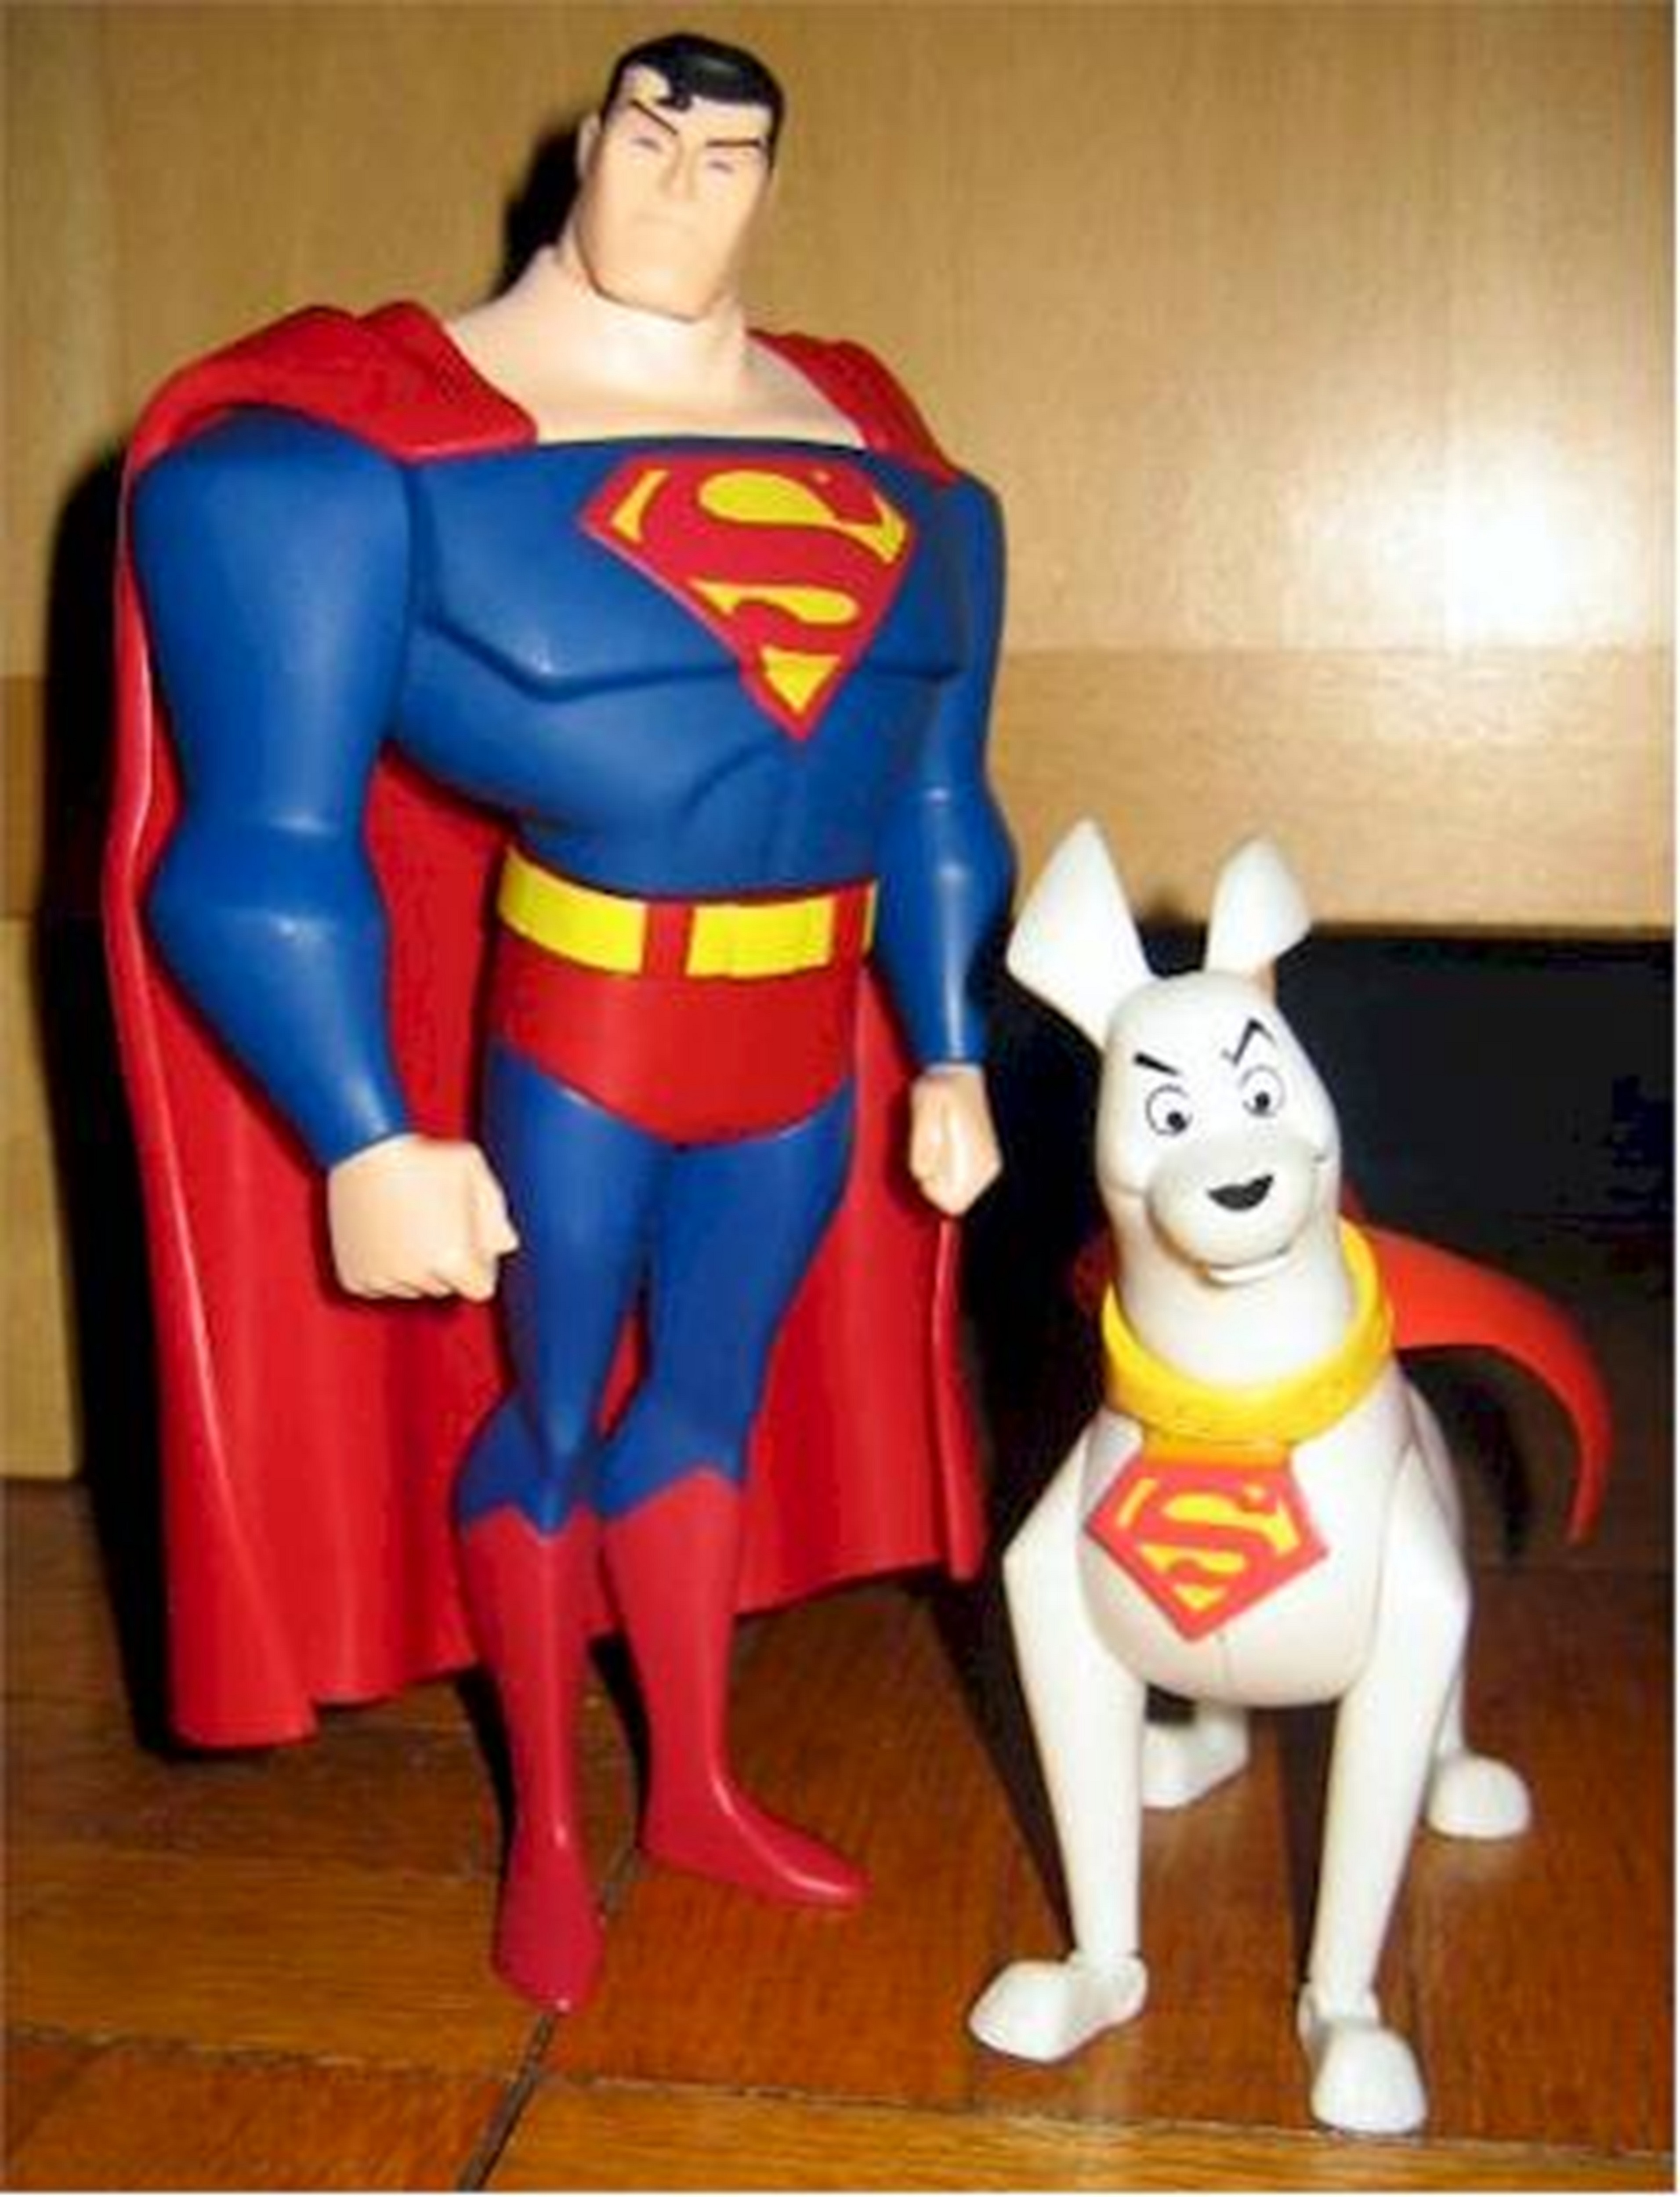 Super Friends Krypto The Superdog Photo